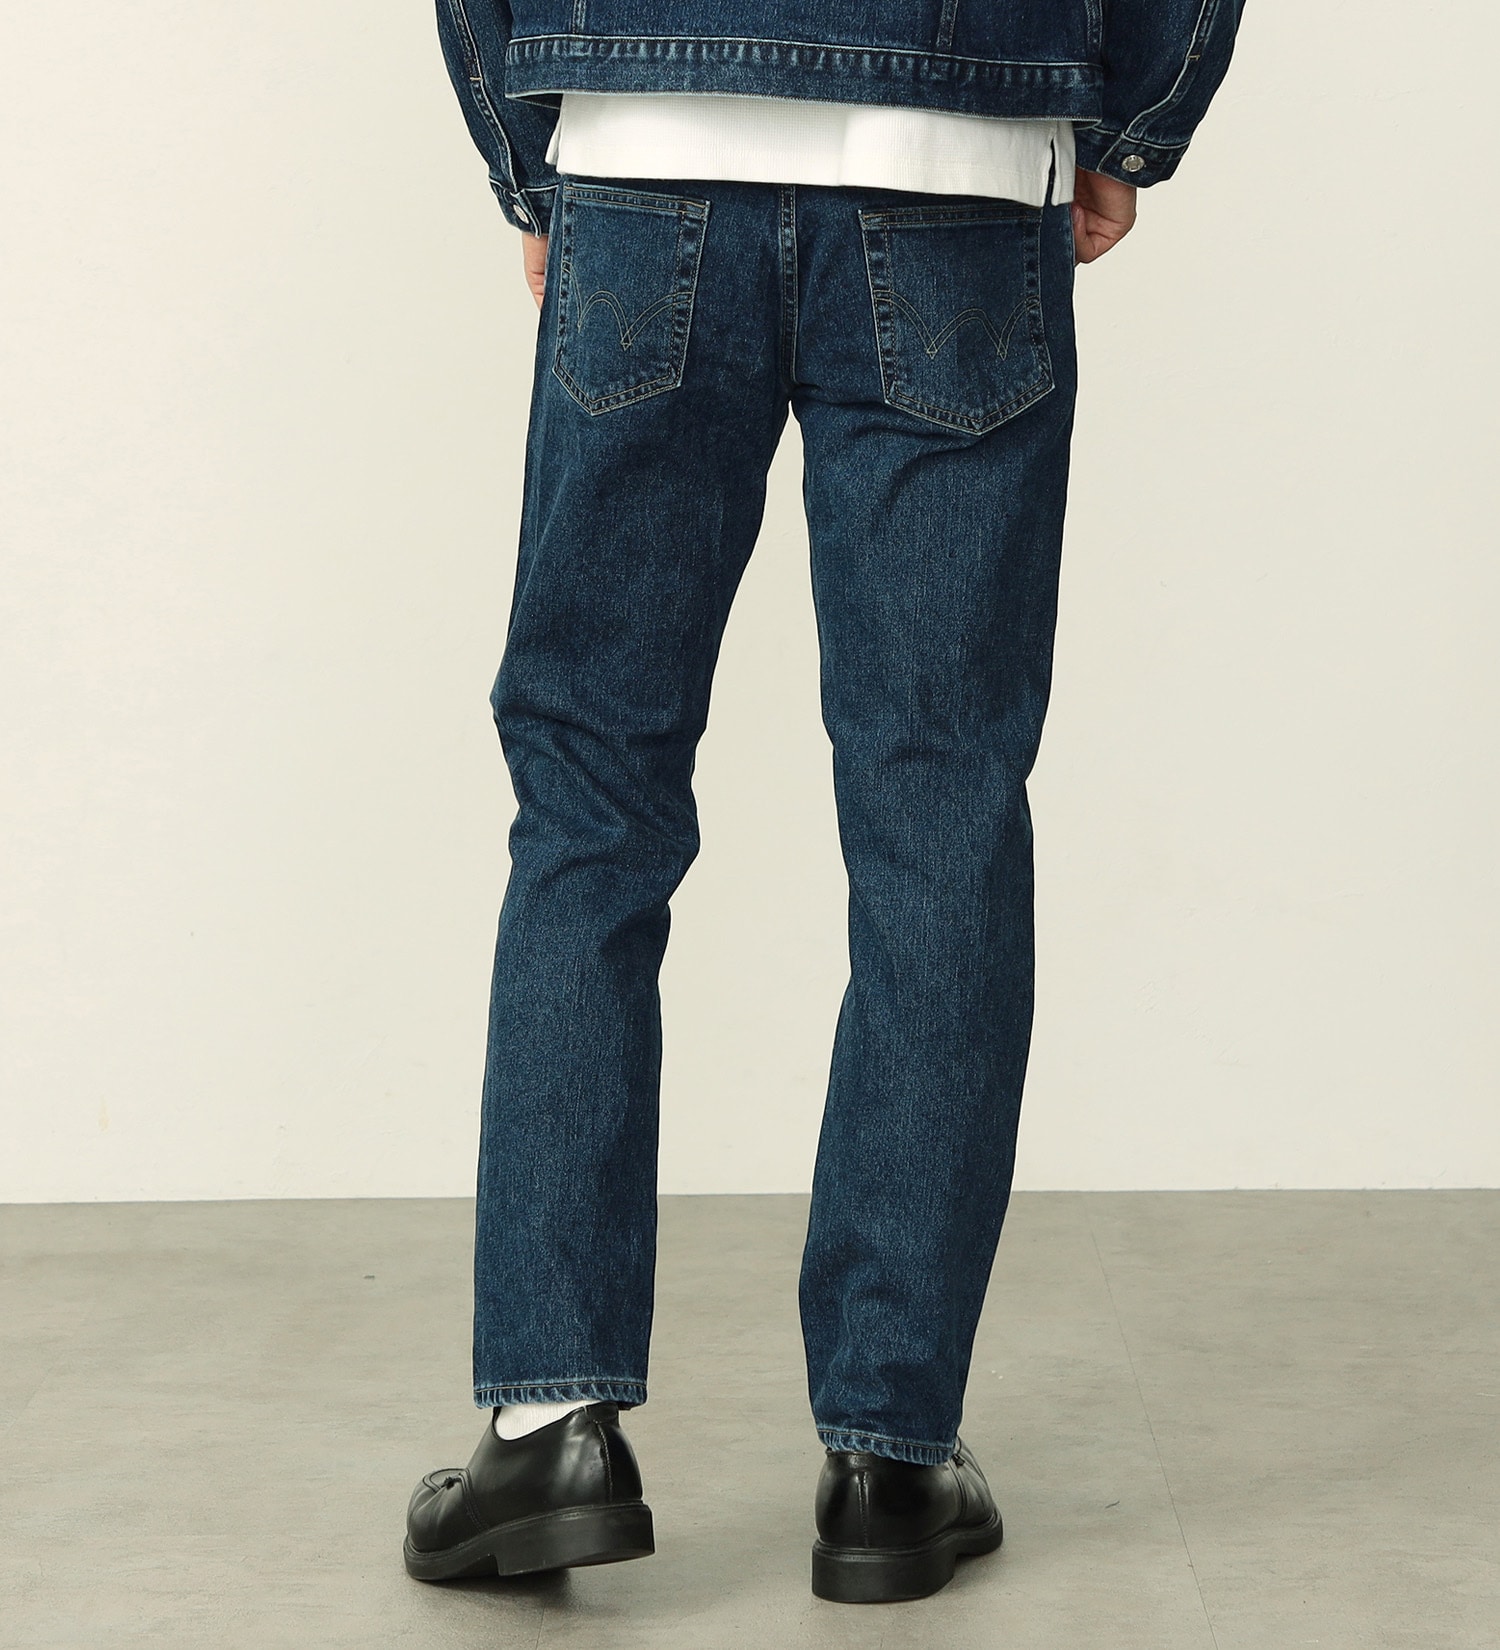 EDWIN(エドウイン)の【WEB限定】五・八デニム レギュラーストレートデニムパンツ ふつうのジーンズ 日本製 MADE IN JAPAN|パンツ/デニムパンツ/メンズ|中色ブルー